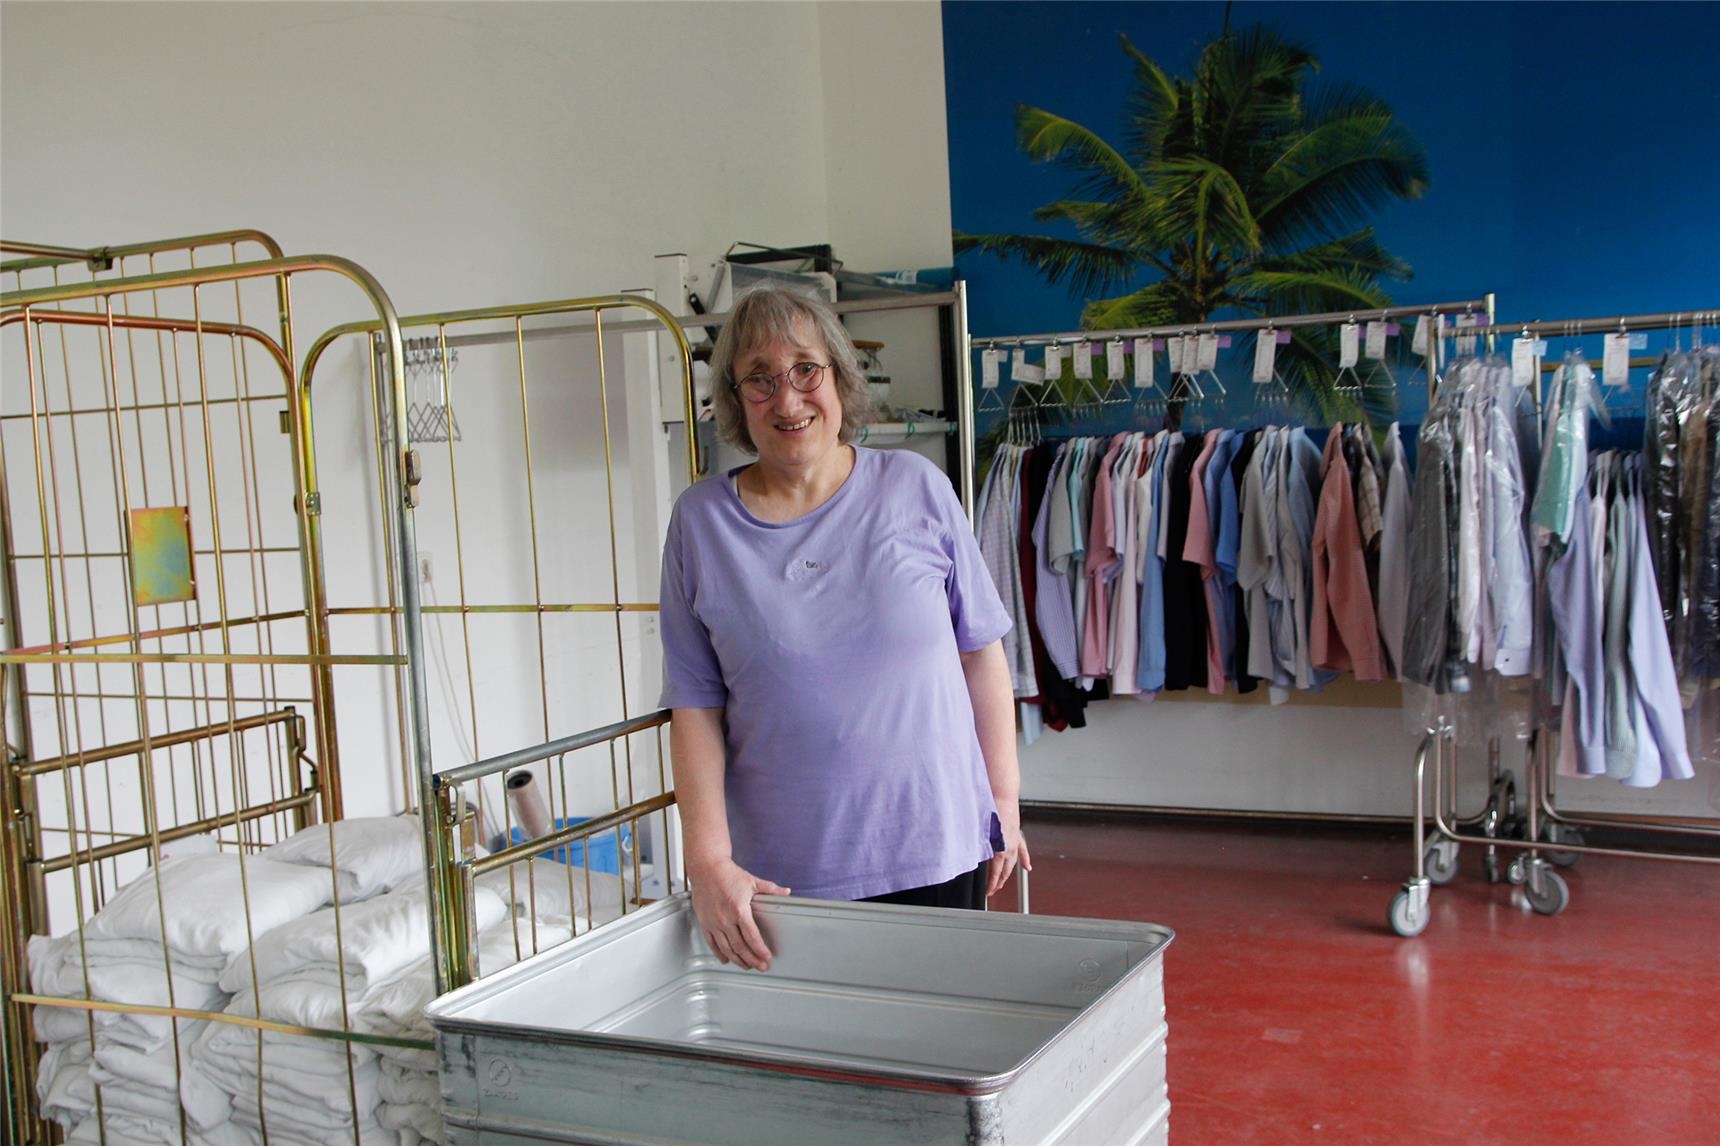 Rita Schneller (59), seit 40 Jahren bei der UWA. Bevor sie zur Wäscherei kam, hatte sie in der Näherei mitgearbeitet. Auch sie geht gerne zur UWA: „Es macht mir Spaß und ich freue mich auf die Arbeit. (Bernhard Gattner)